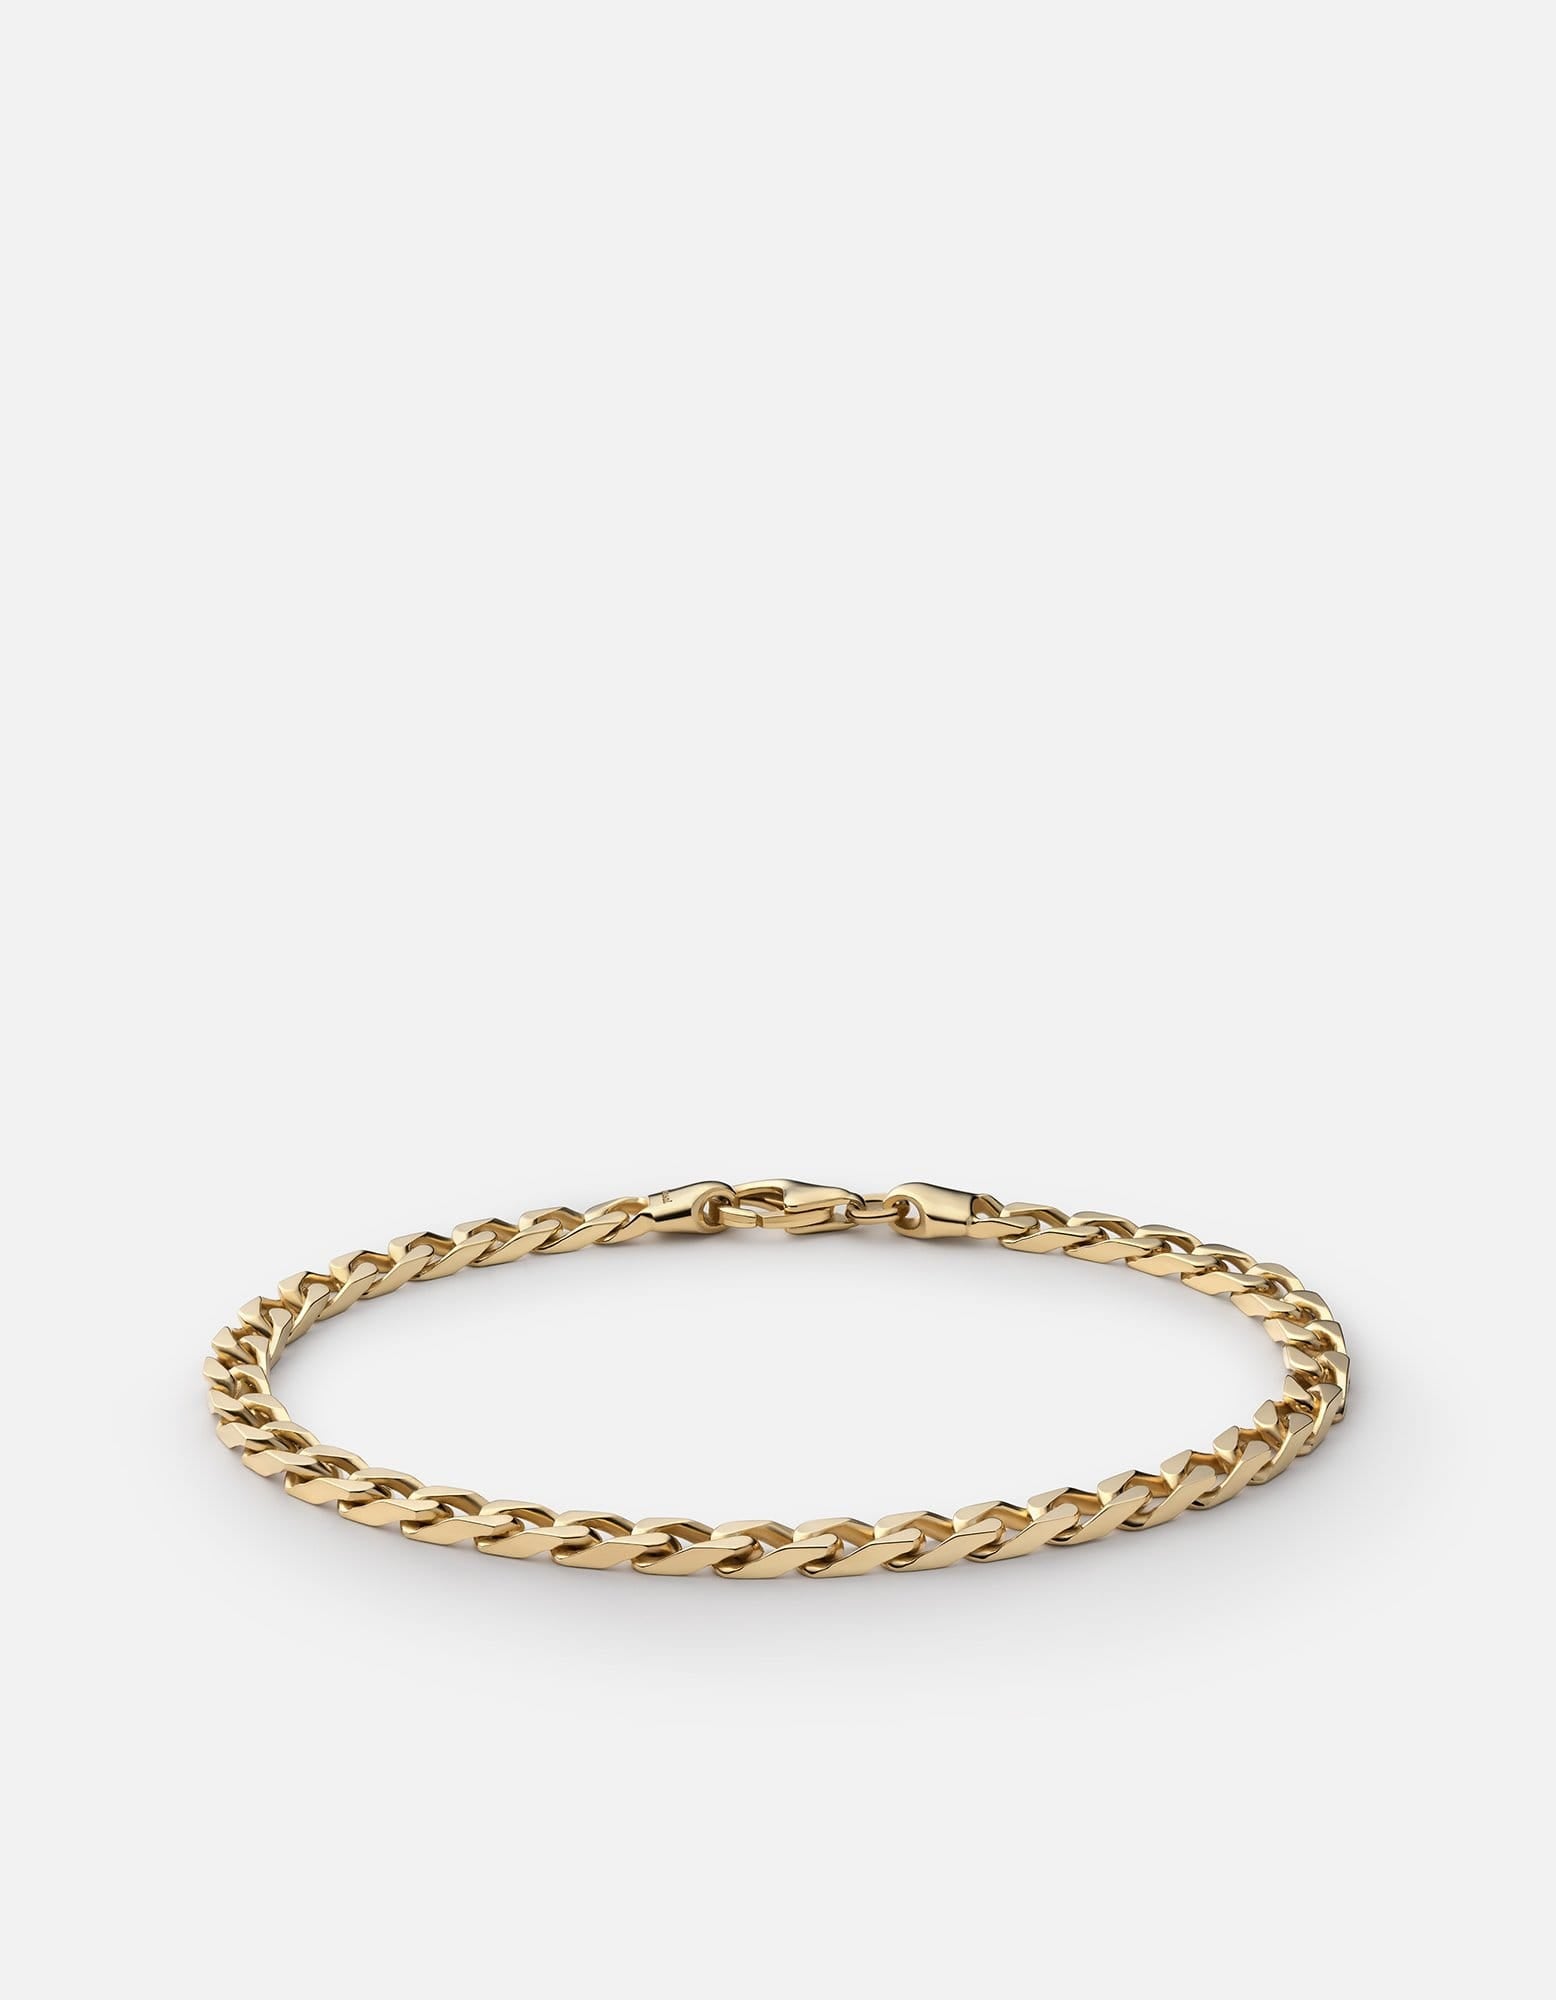 4mm Cuban Chain Bracelet, Gold Vermeil | Men's Bracelets | Miansai